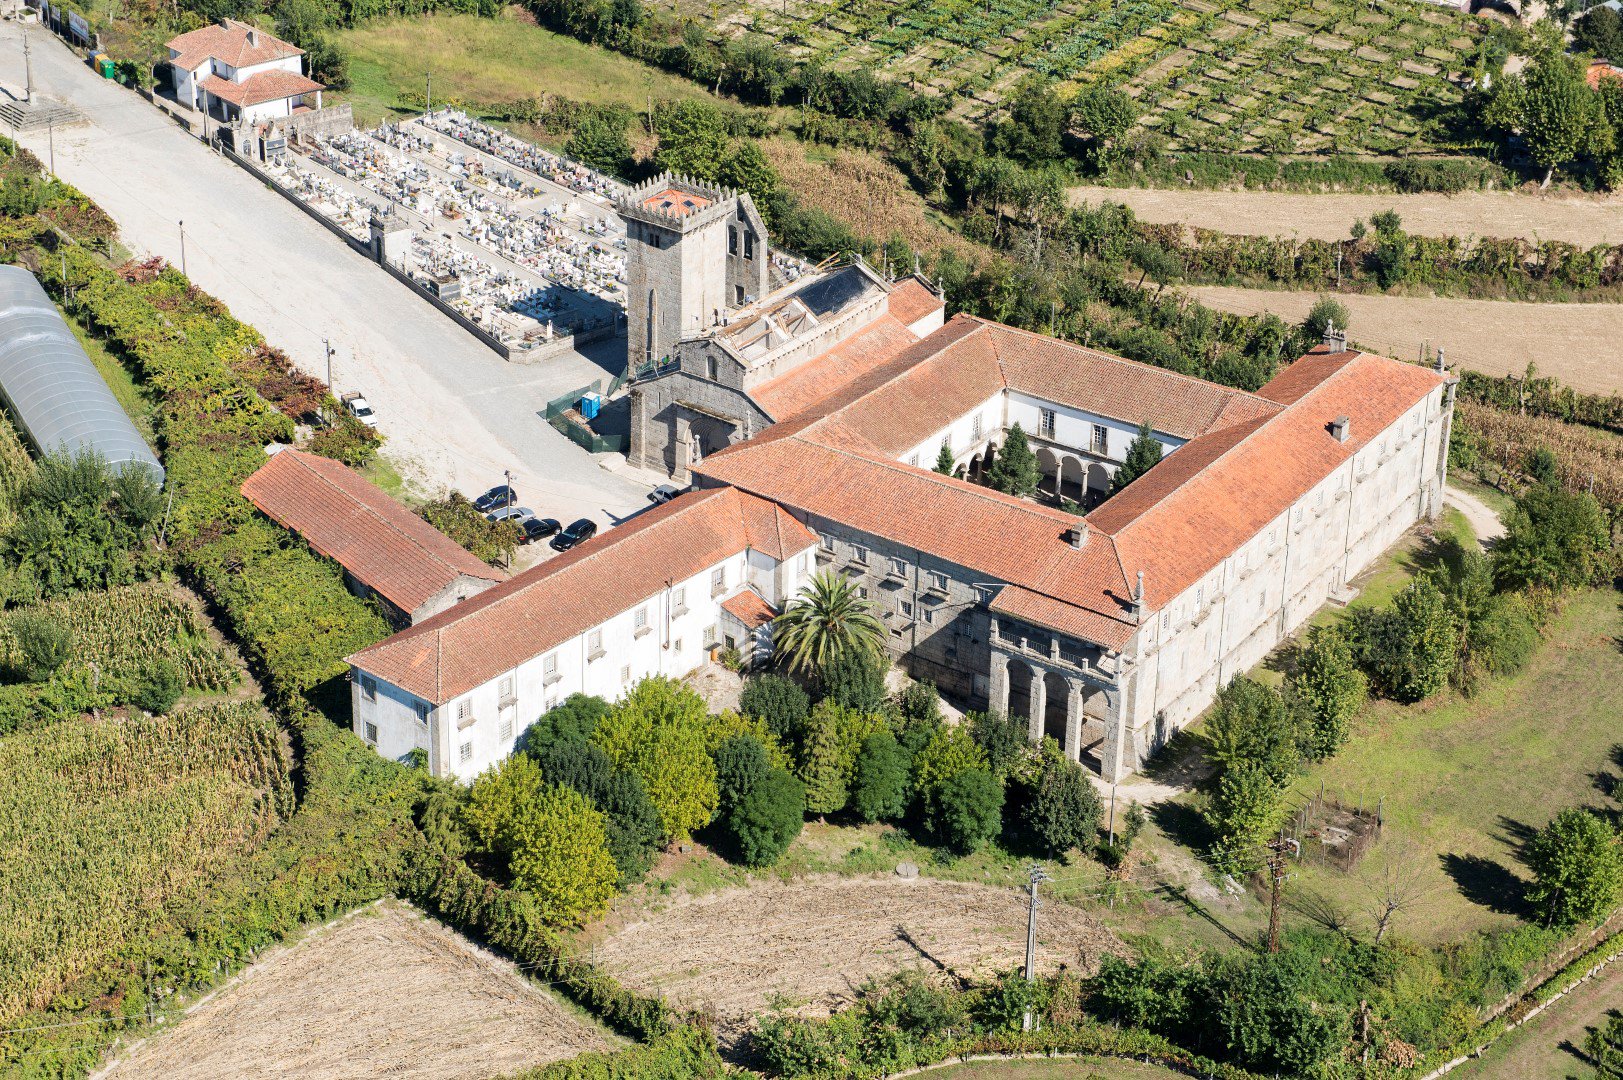 Mosteiro de Travanca em concurso público para exploração turística